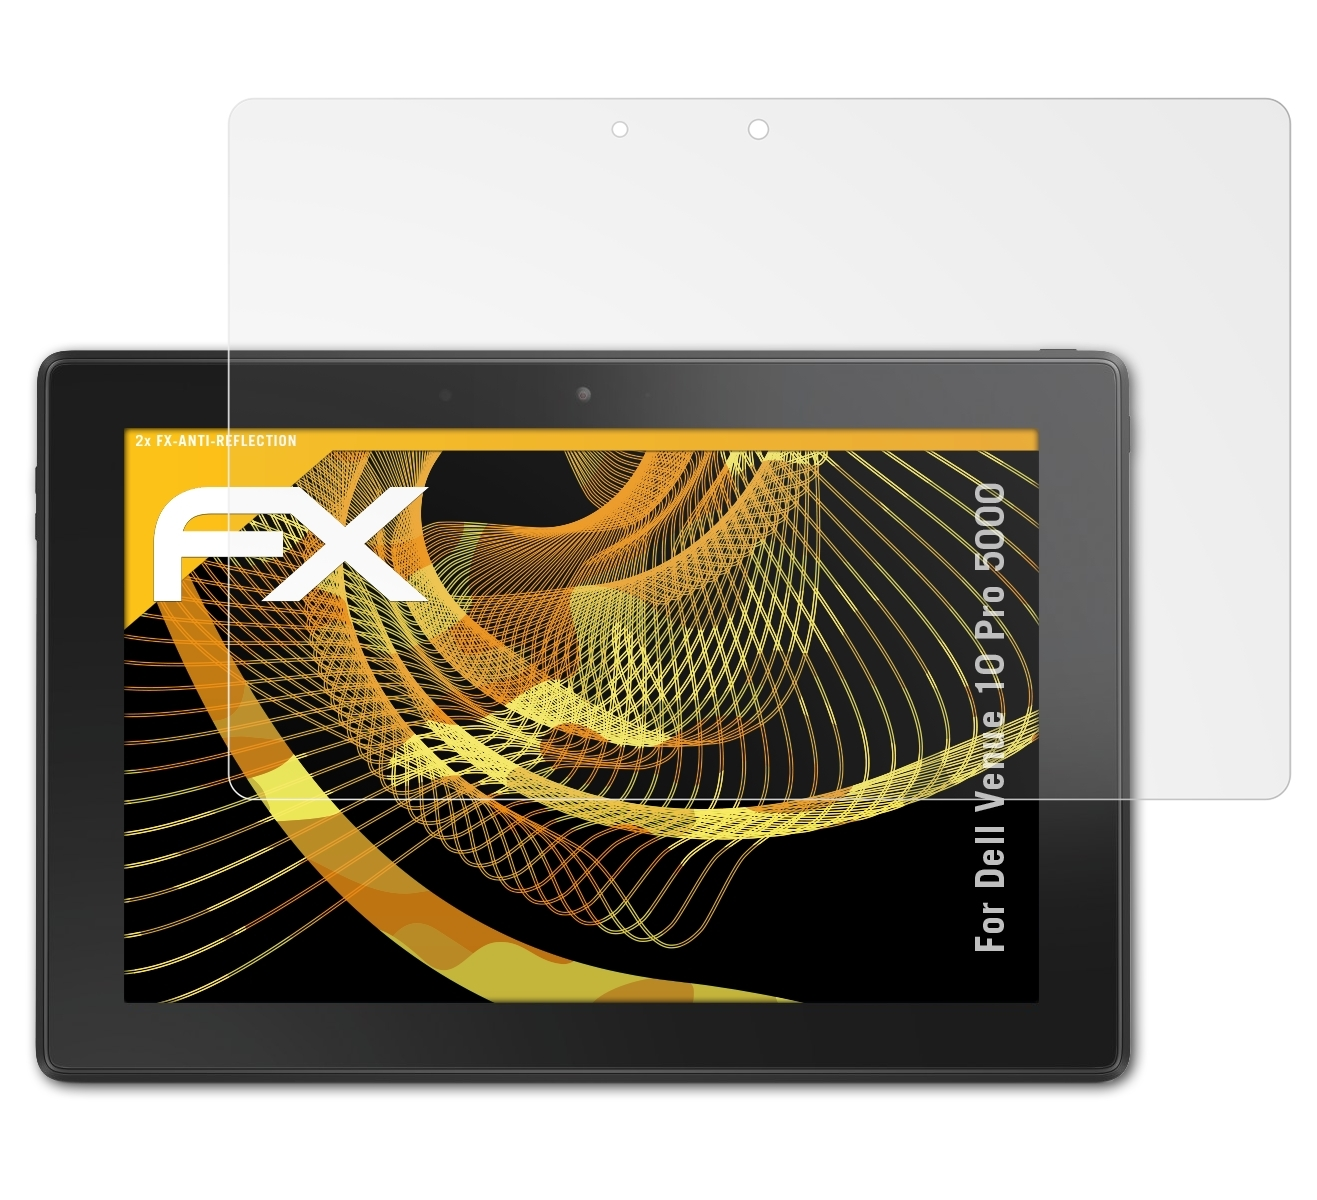 ATFOLIX Displayschutz(für 5000) 10 Dell 2x FX-Antireflex Pro Venue